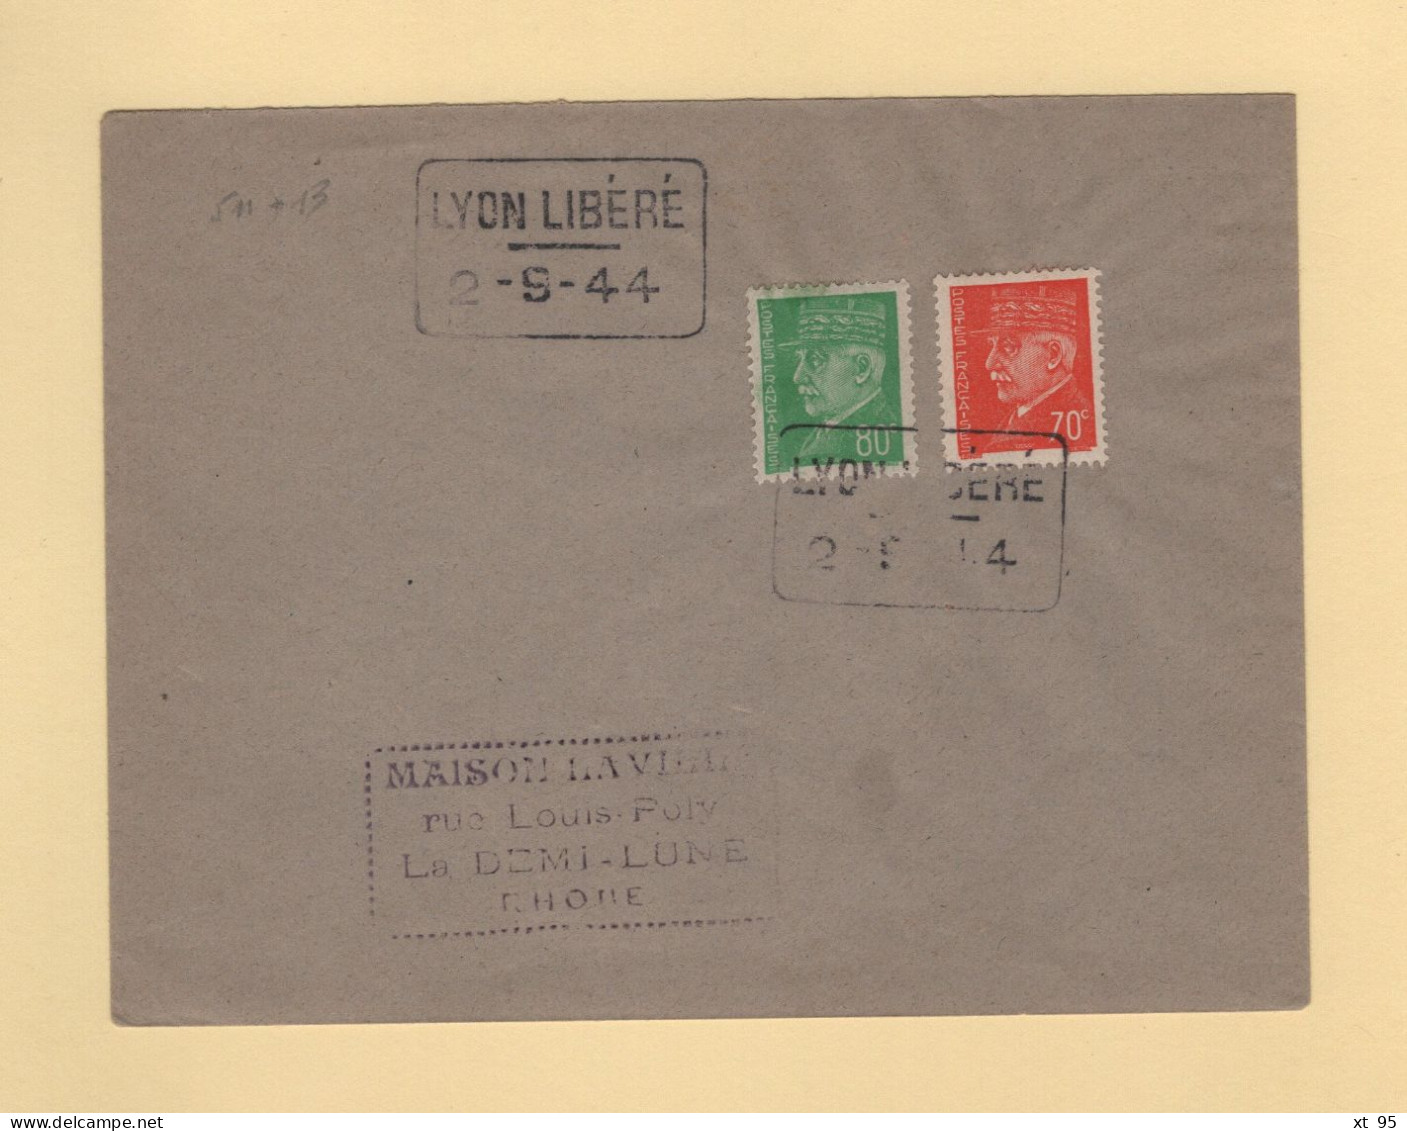 Liberation - Lyon Libere - 2-9-44 - Type Petain - Liberación